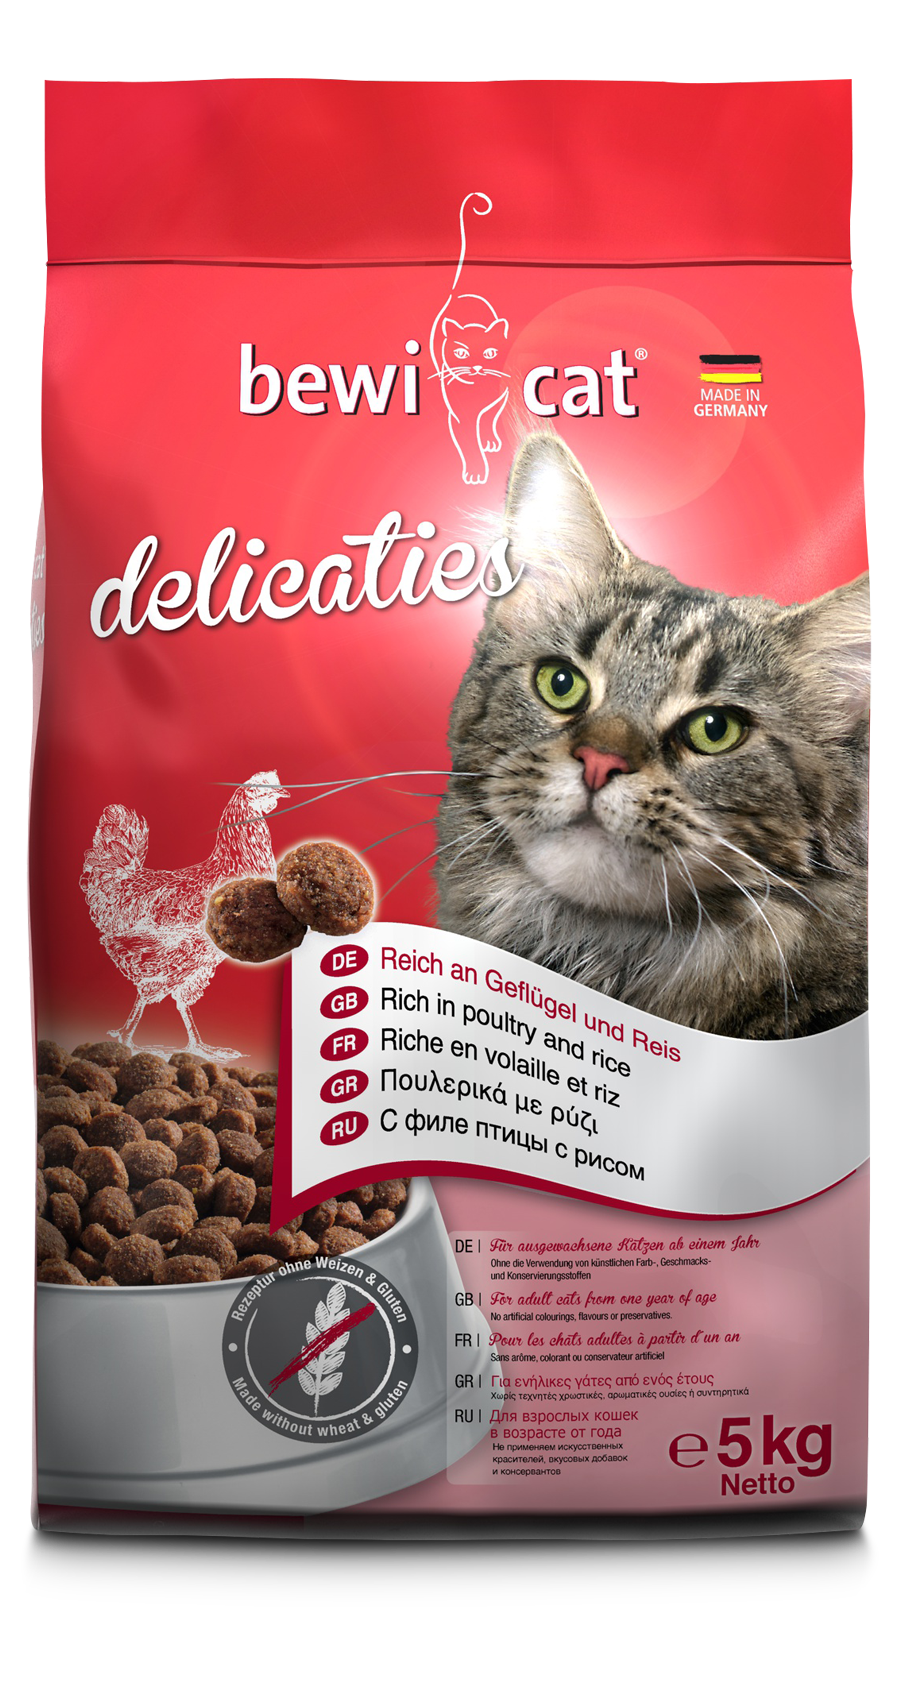 Bewicat-delicaties-5kg-front